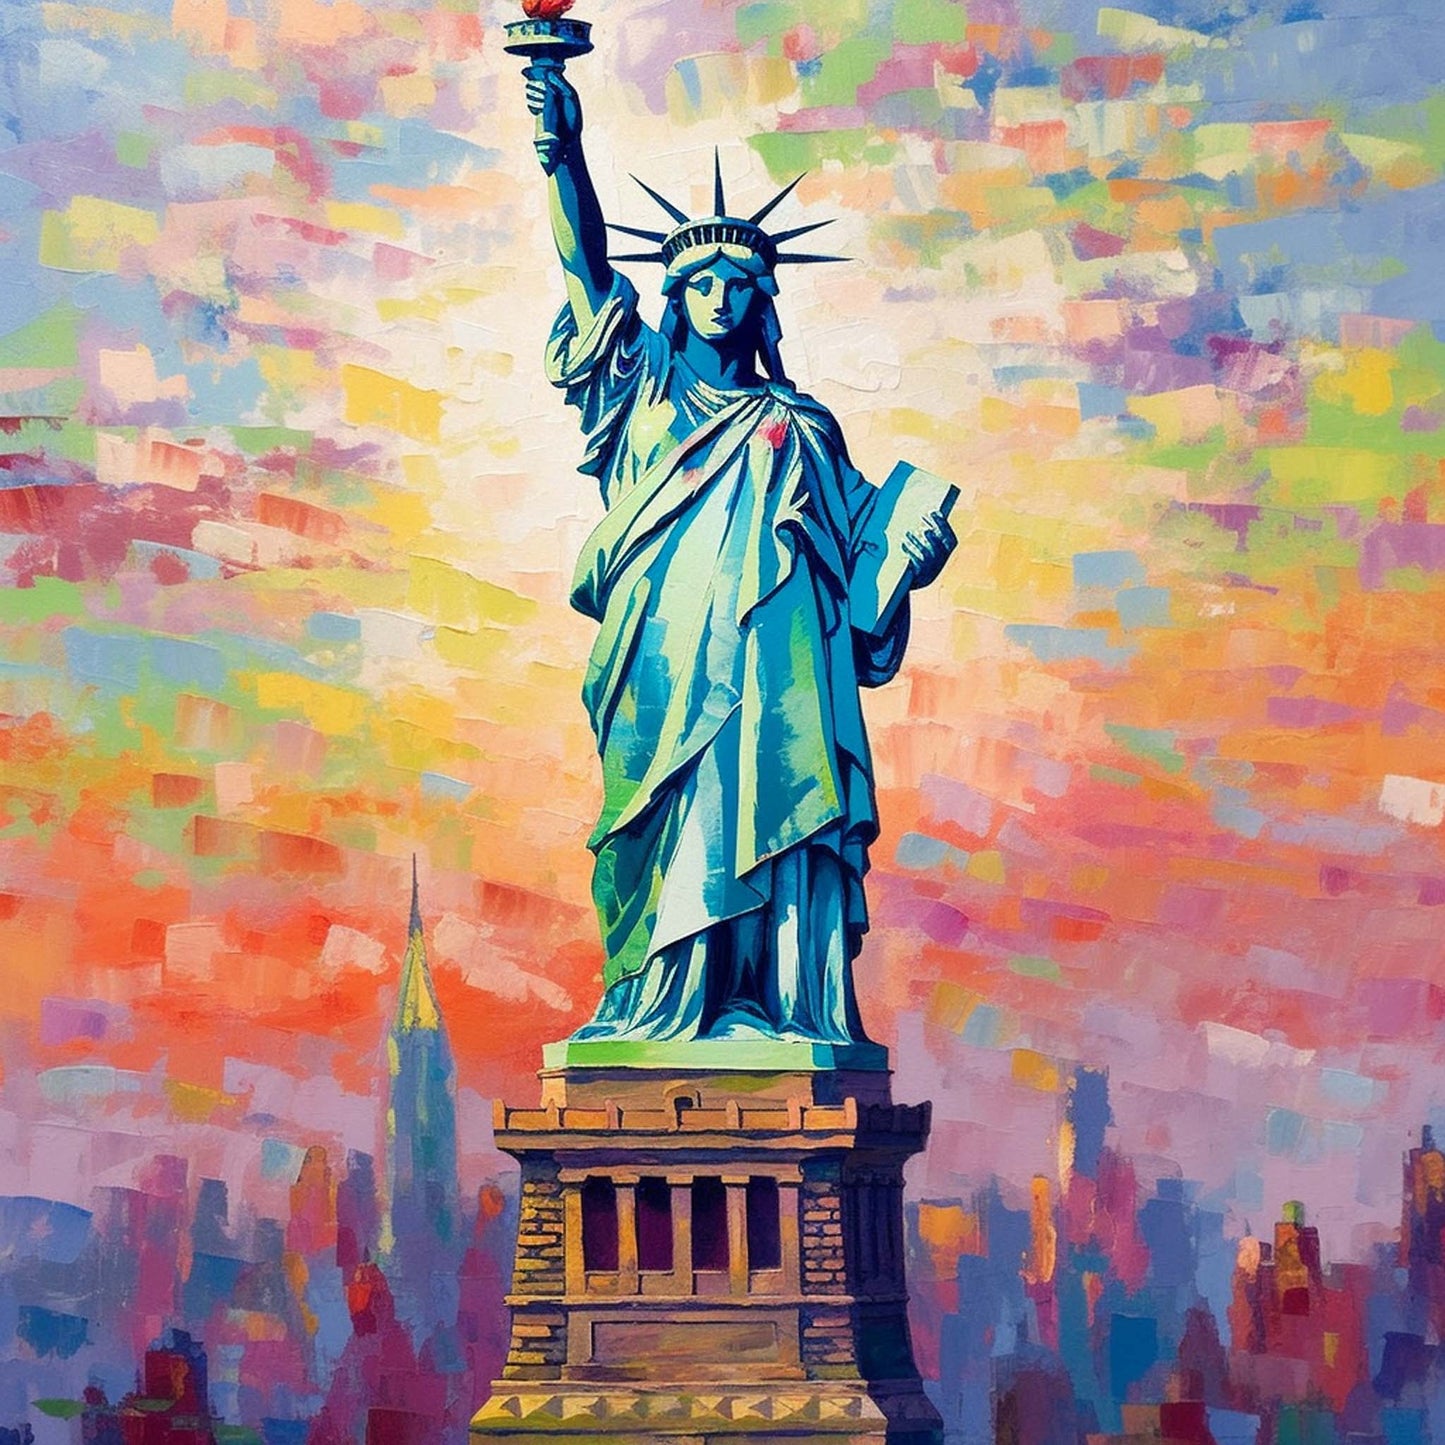 Urbanisto - New York Freiheitsstatue - Wandbild in der Stilrichtung des Impressionismus